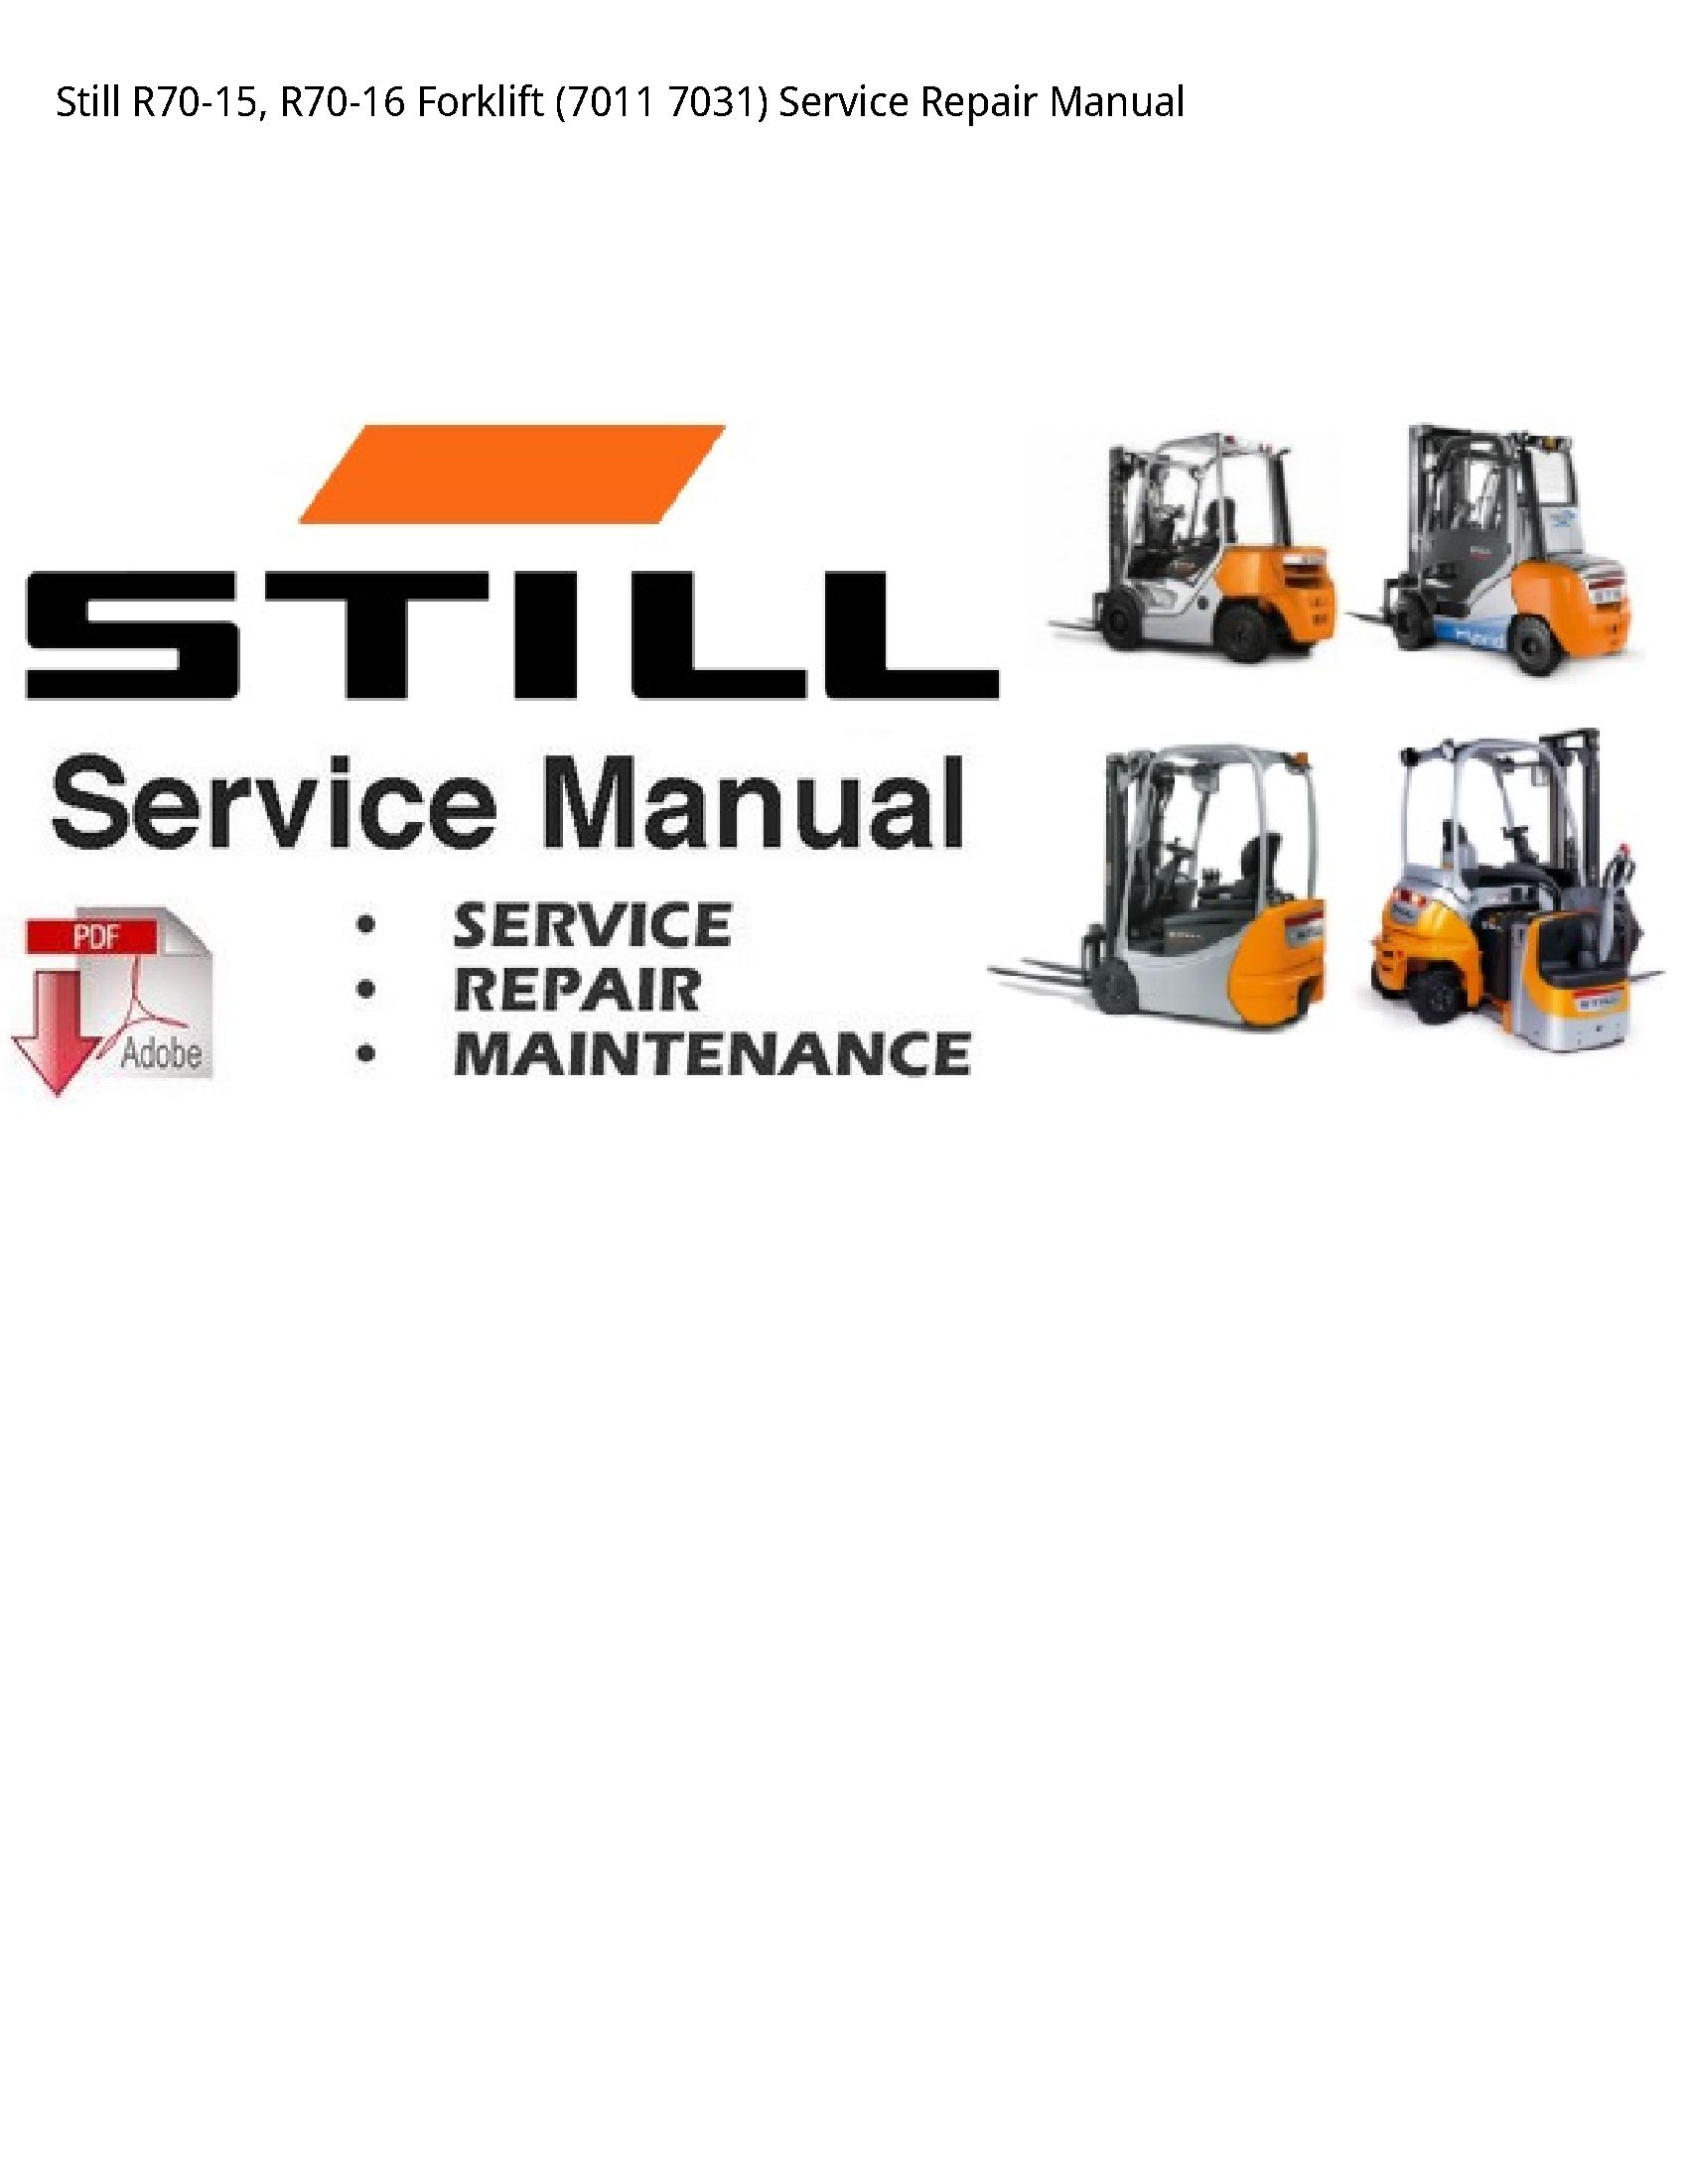 Still R70-15 Forklift manual